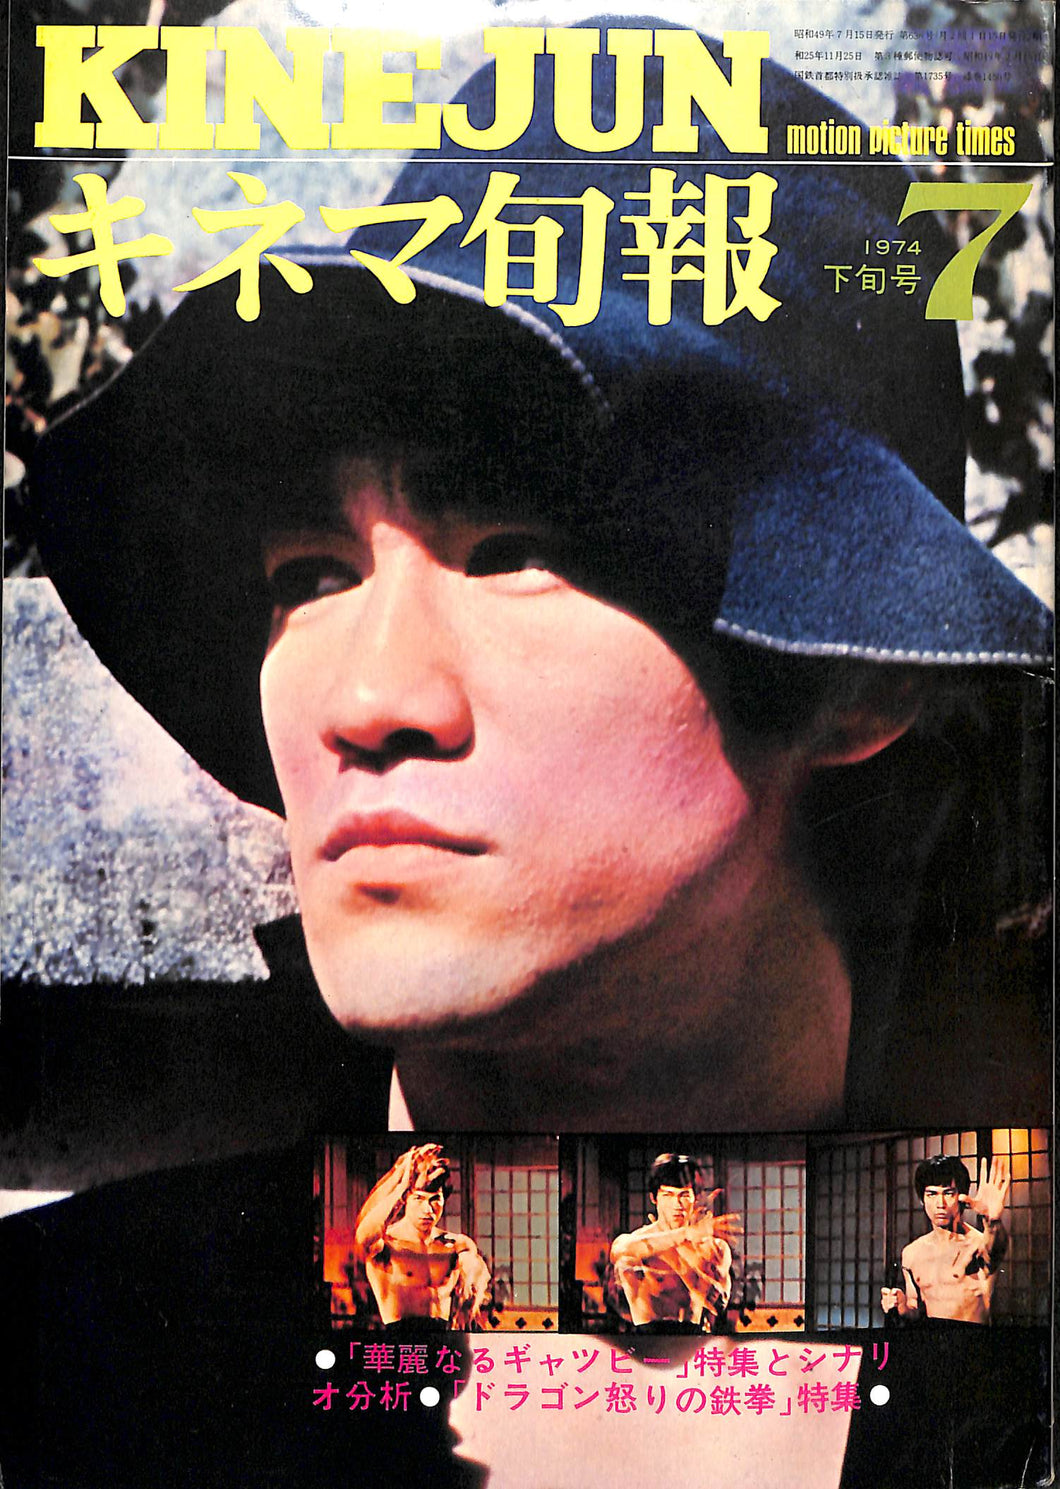 キネマ旬報 1974年 7月下旬号 表紙の映画 : ドラゴン怒りの鉄拳 (ブルース・リー)